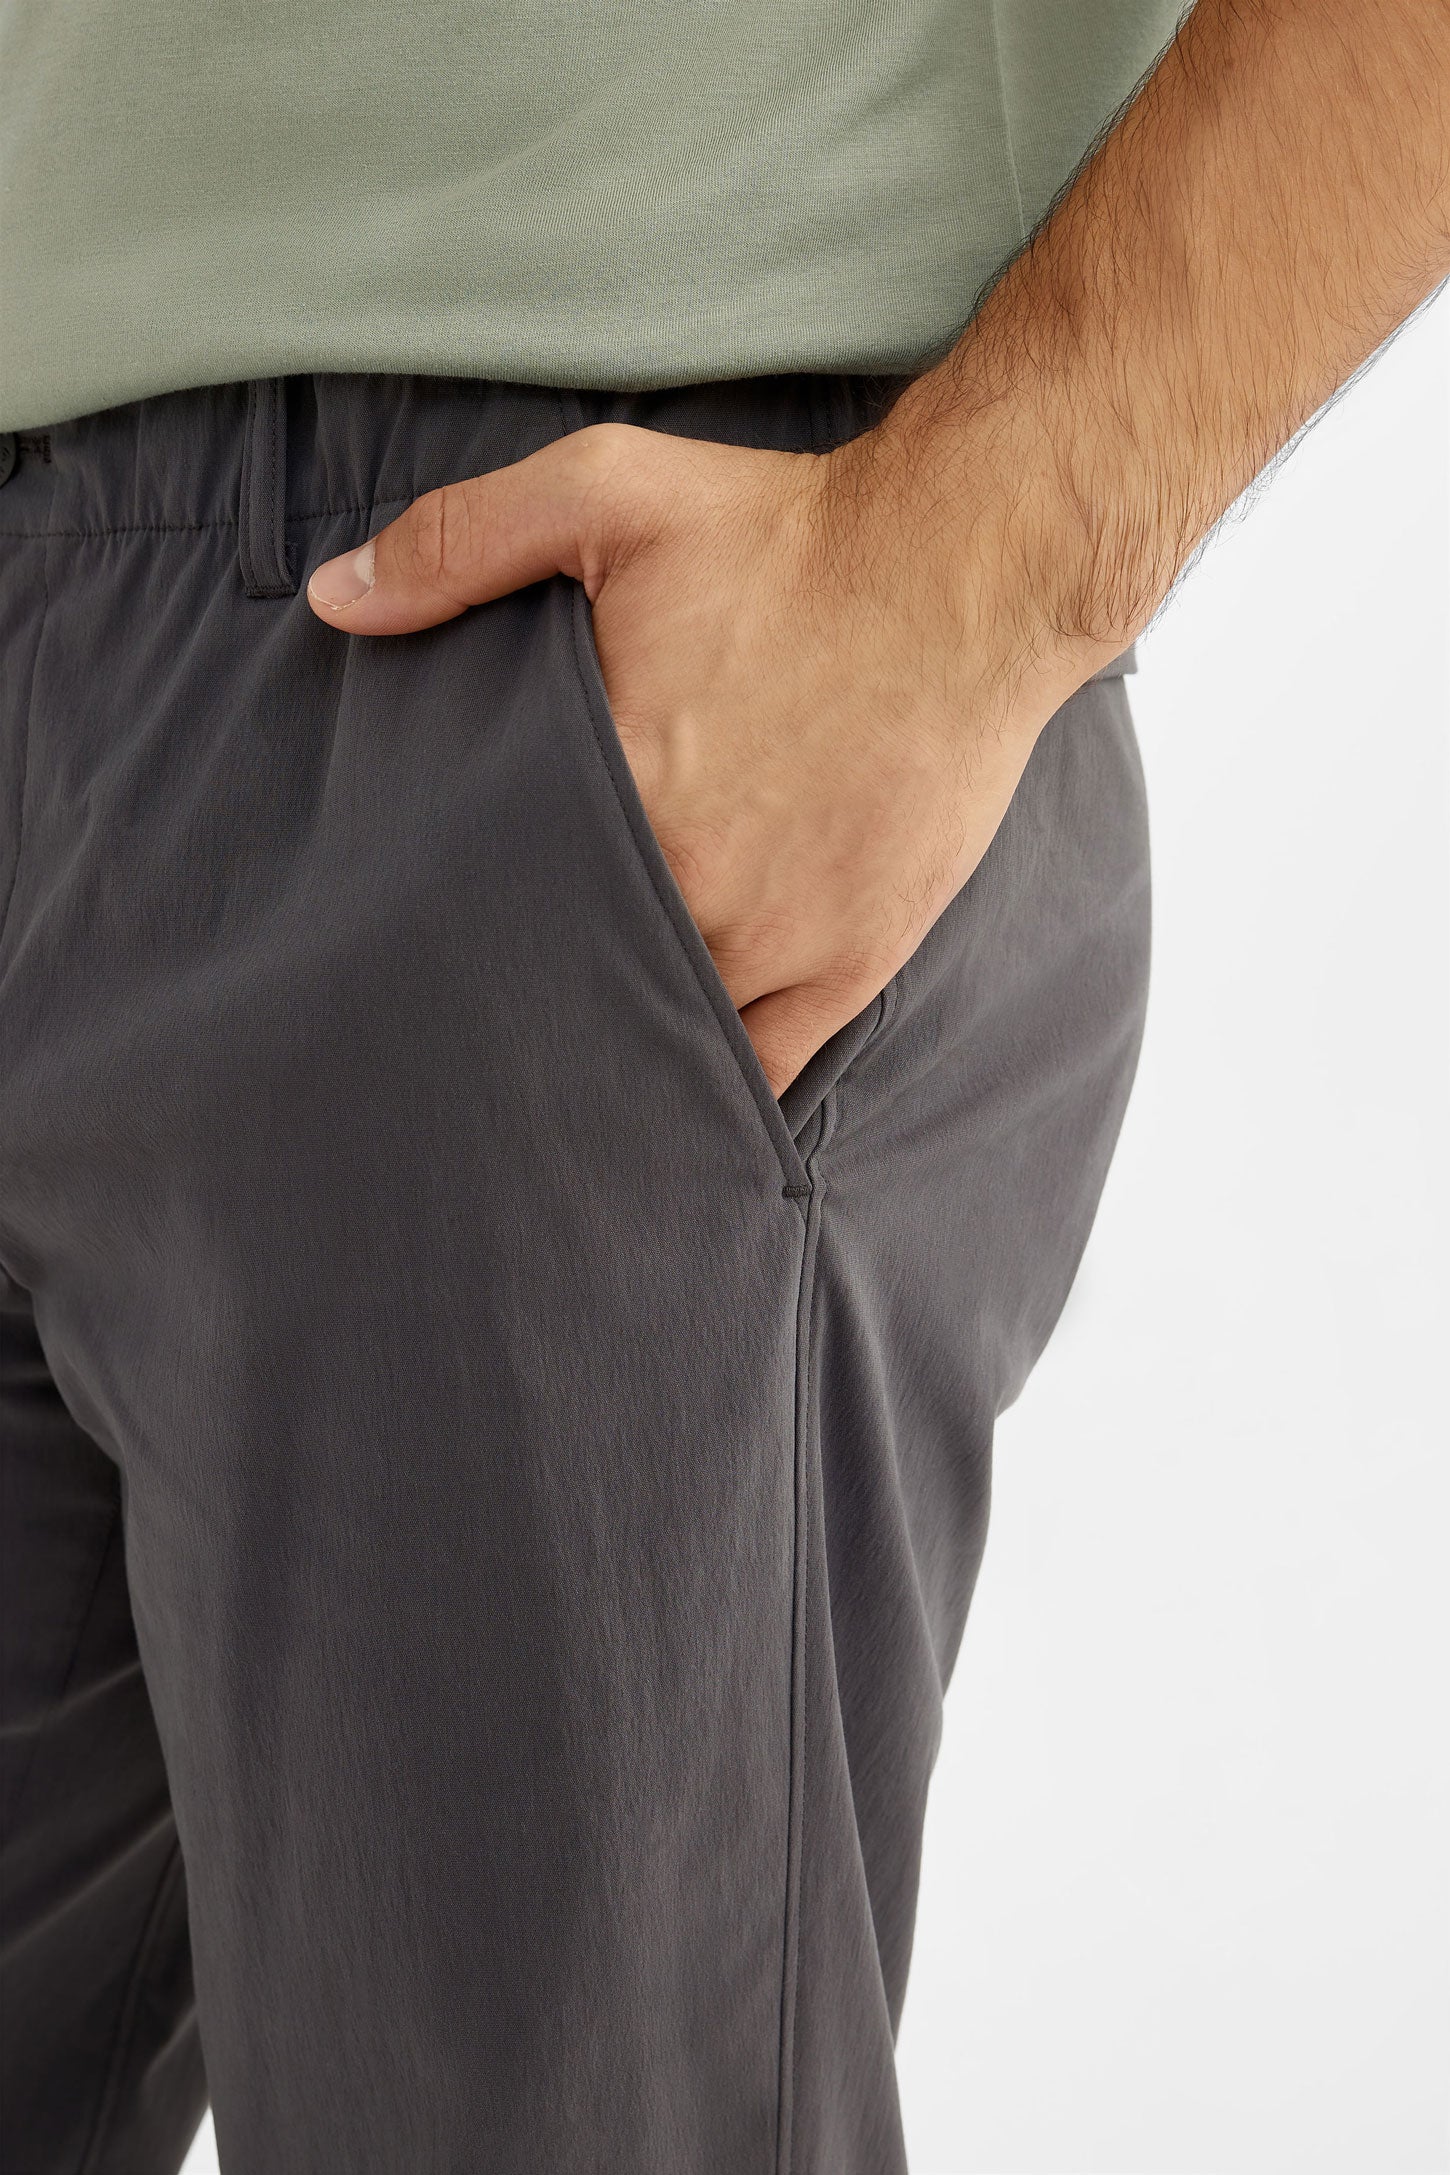 Pantalon extensible résistant à l'eau BM - Homme && GRIS